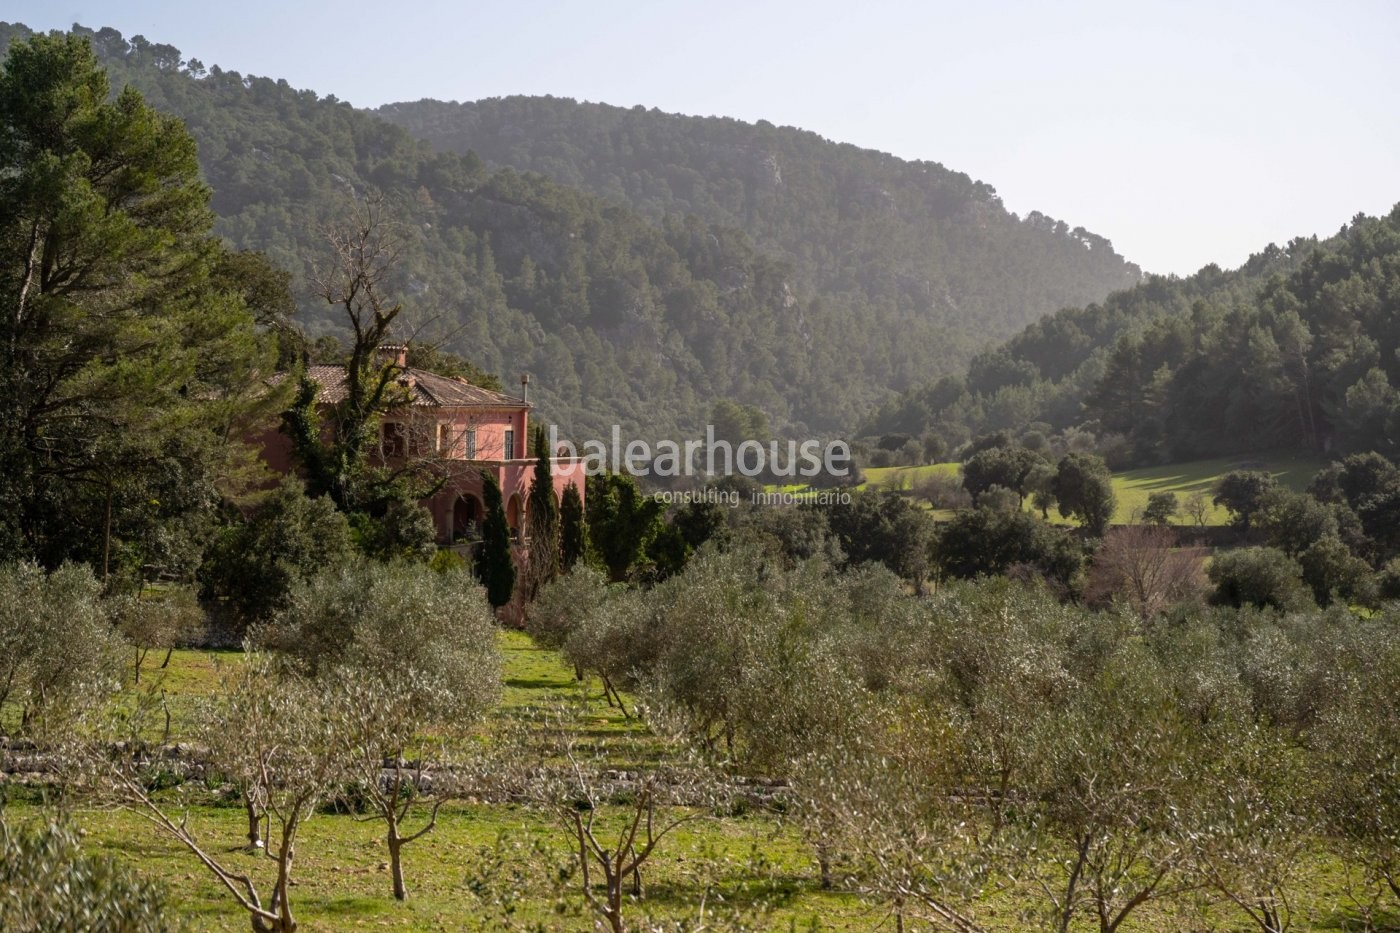 Gran finca en Orient salpicada de campos de olivos dentro del precioso paisaje de la Tramuntana.